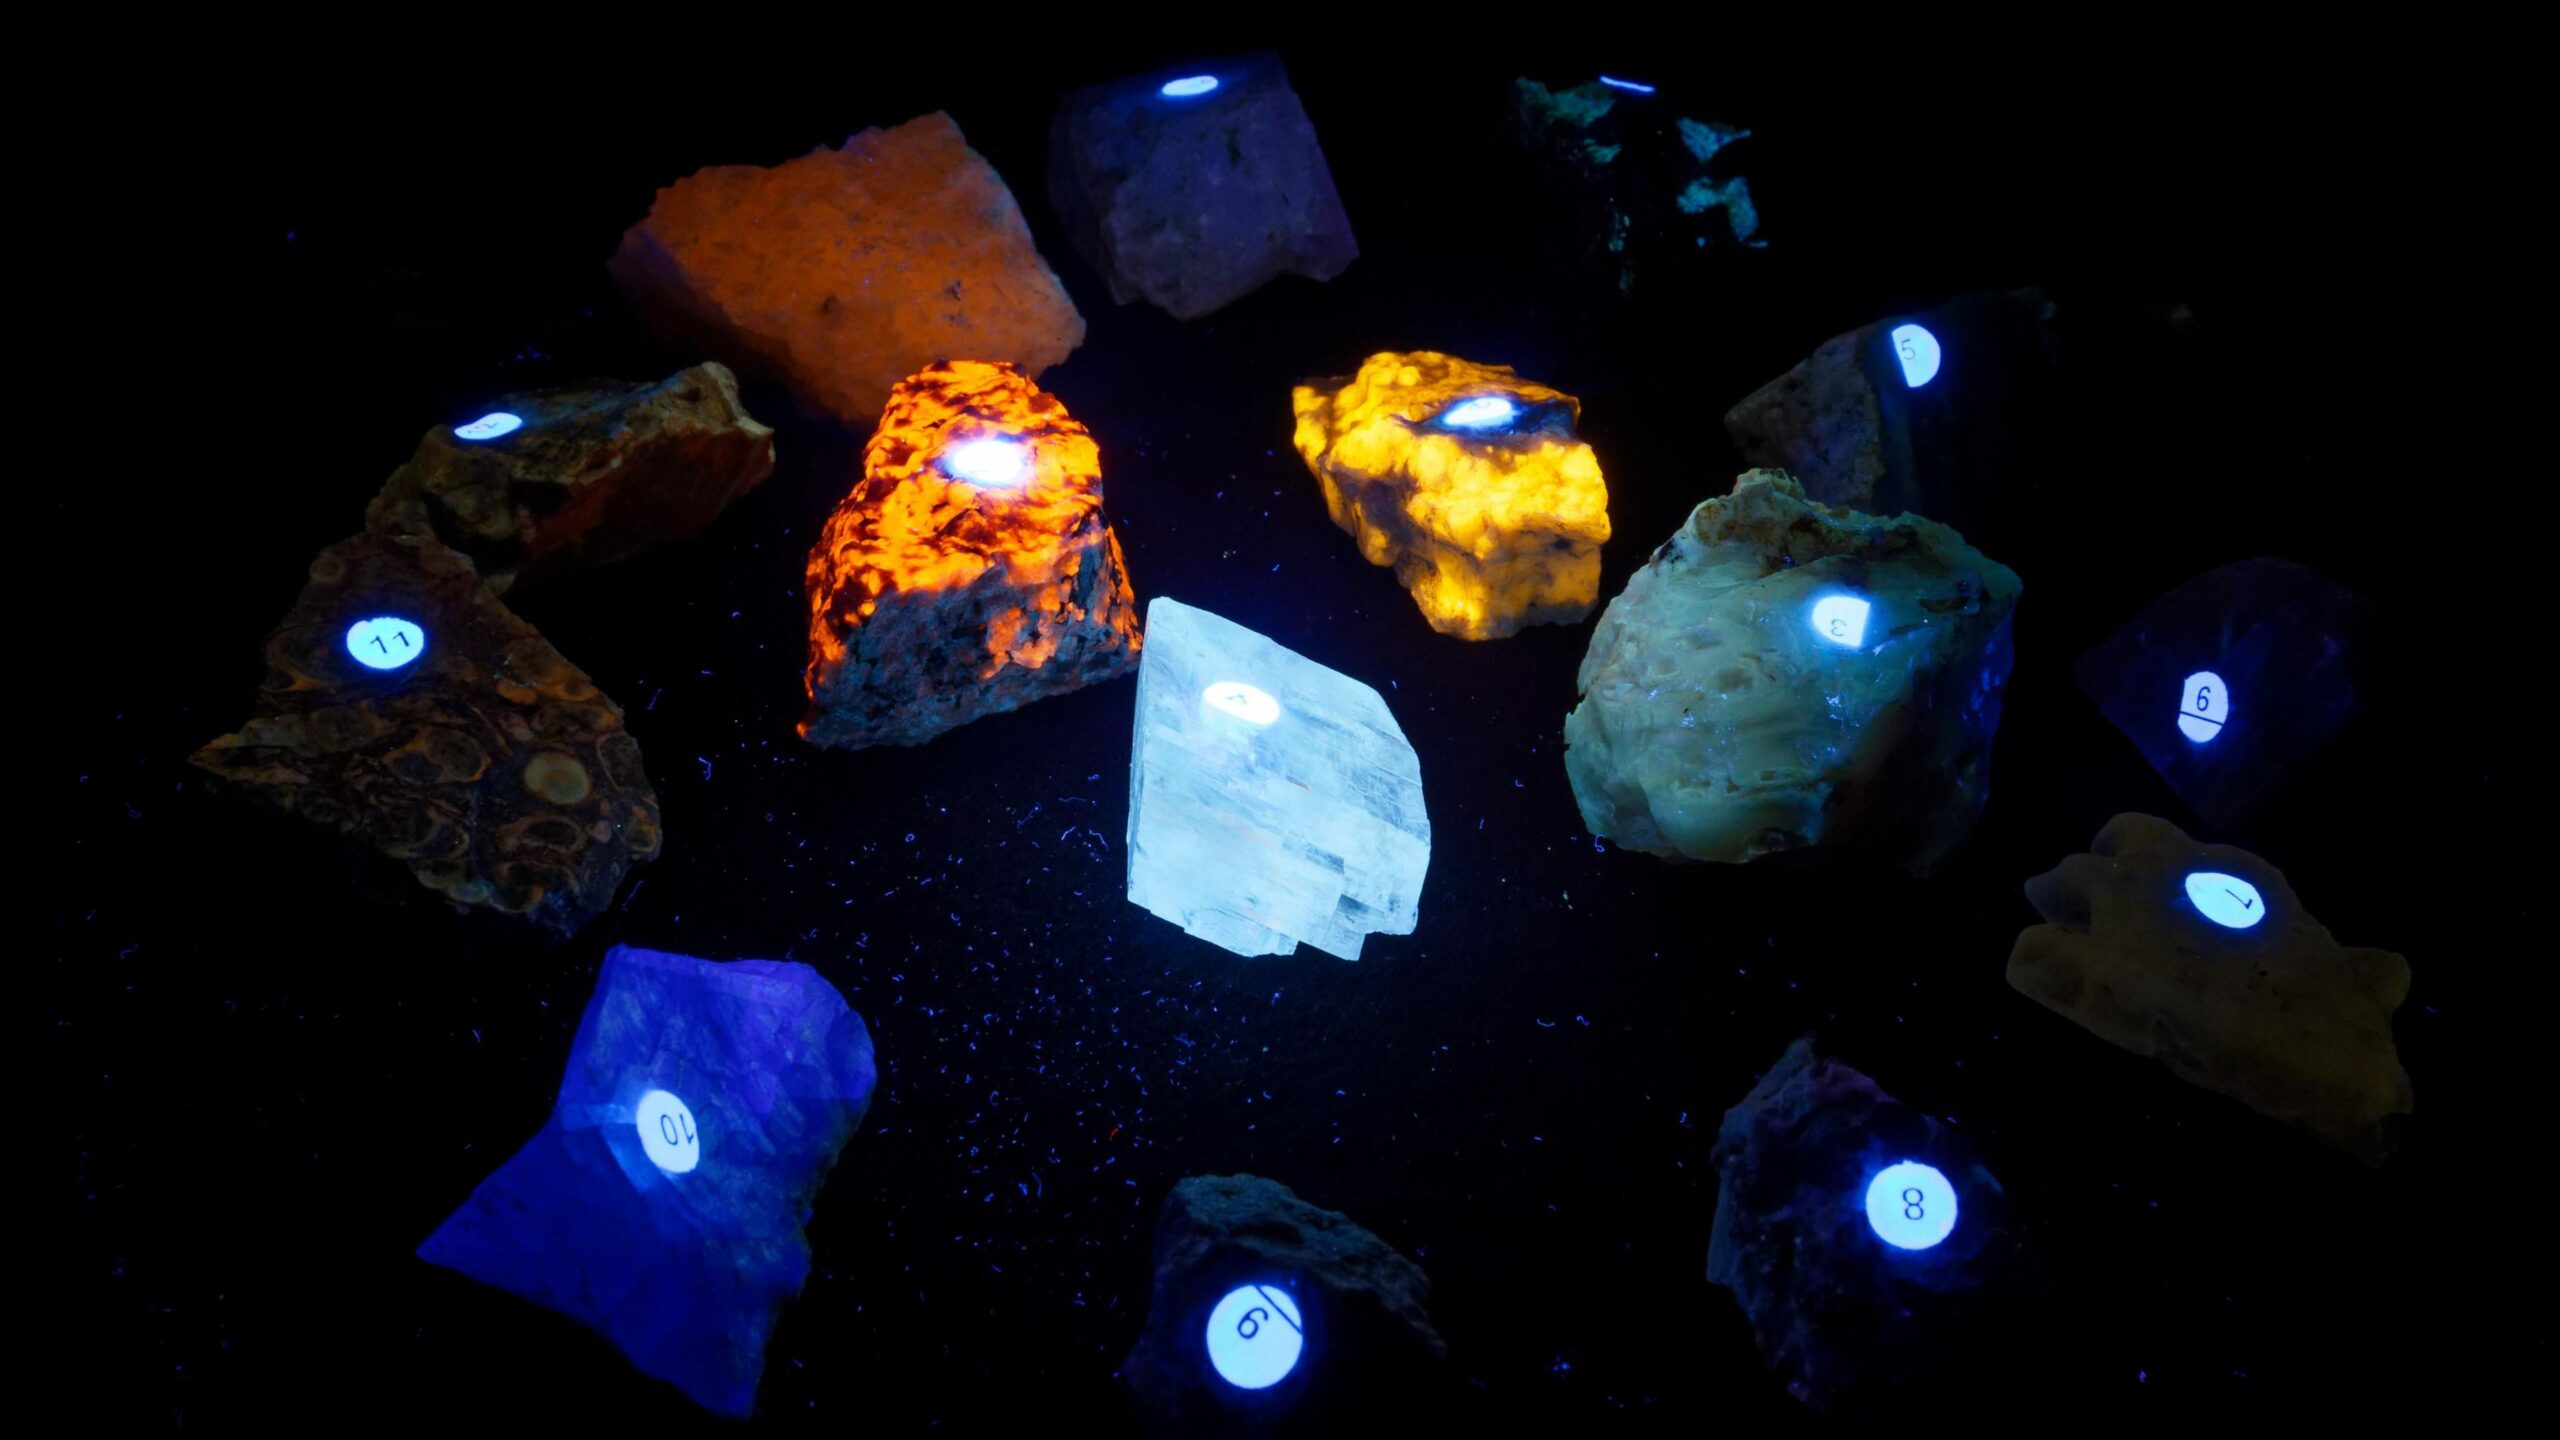 УФ-фотобокс отлично подходит для съемки причудливых камней